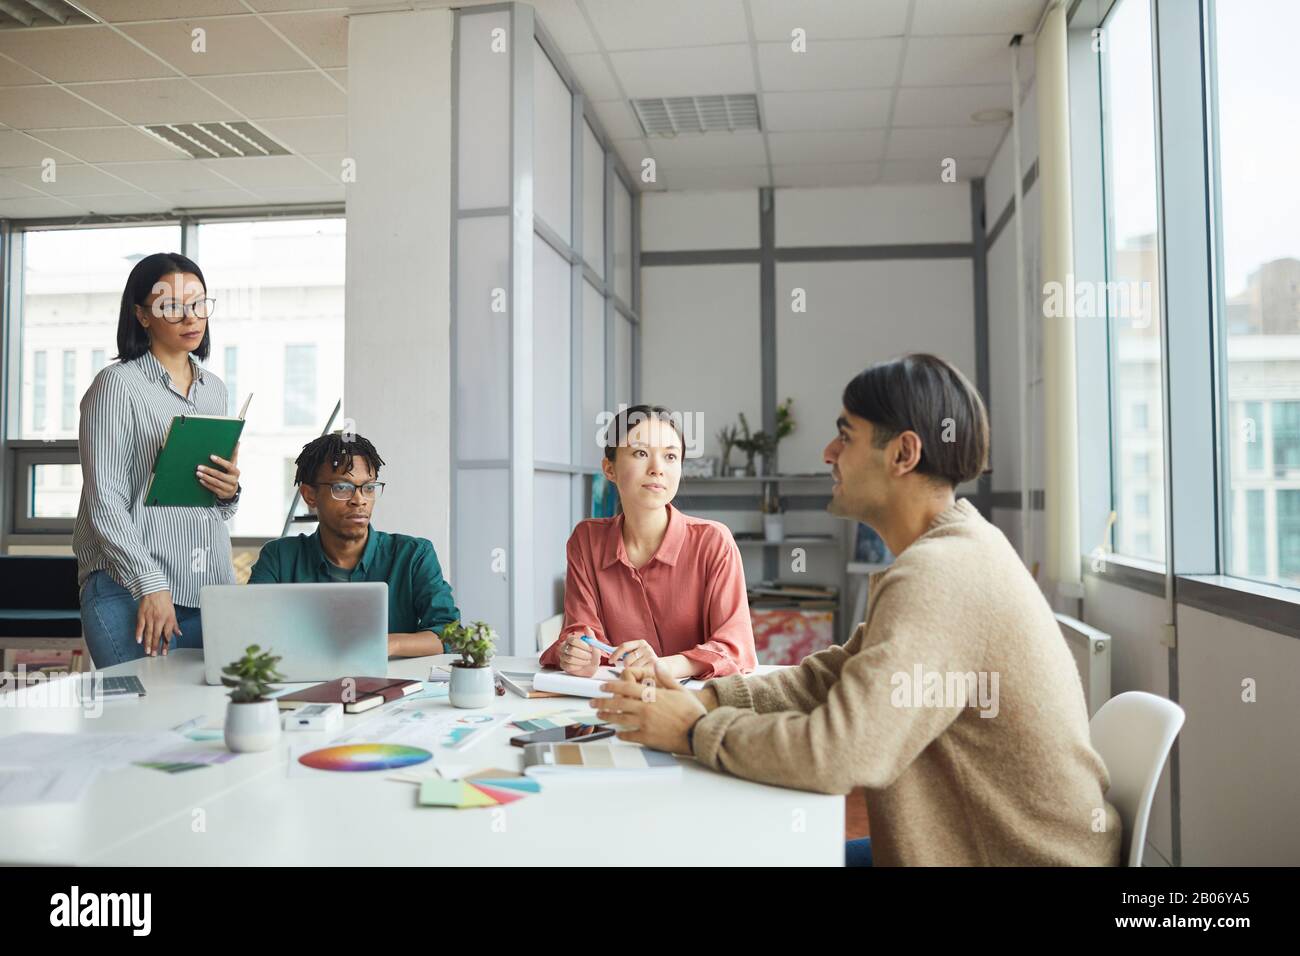 Der junge Geschäftsmann erzählt seinen Kollegen etwas, während sie im Team im Büro am Tisch arbeiten Stockfoto